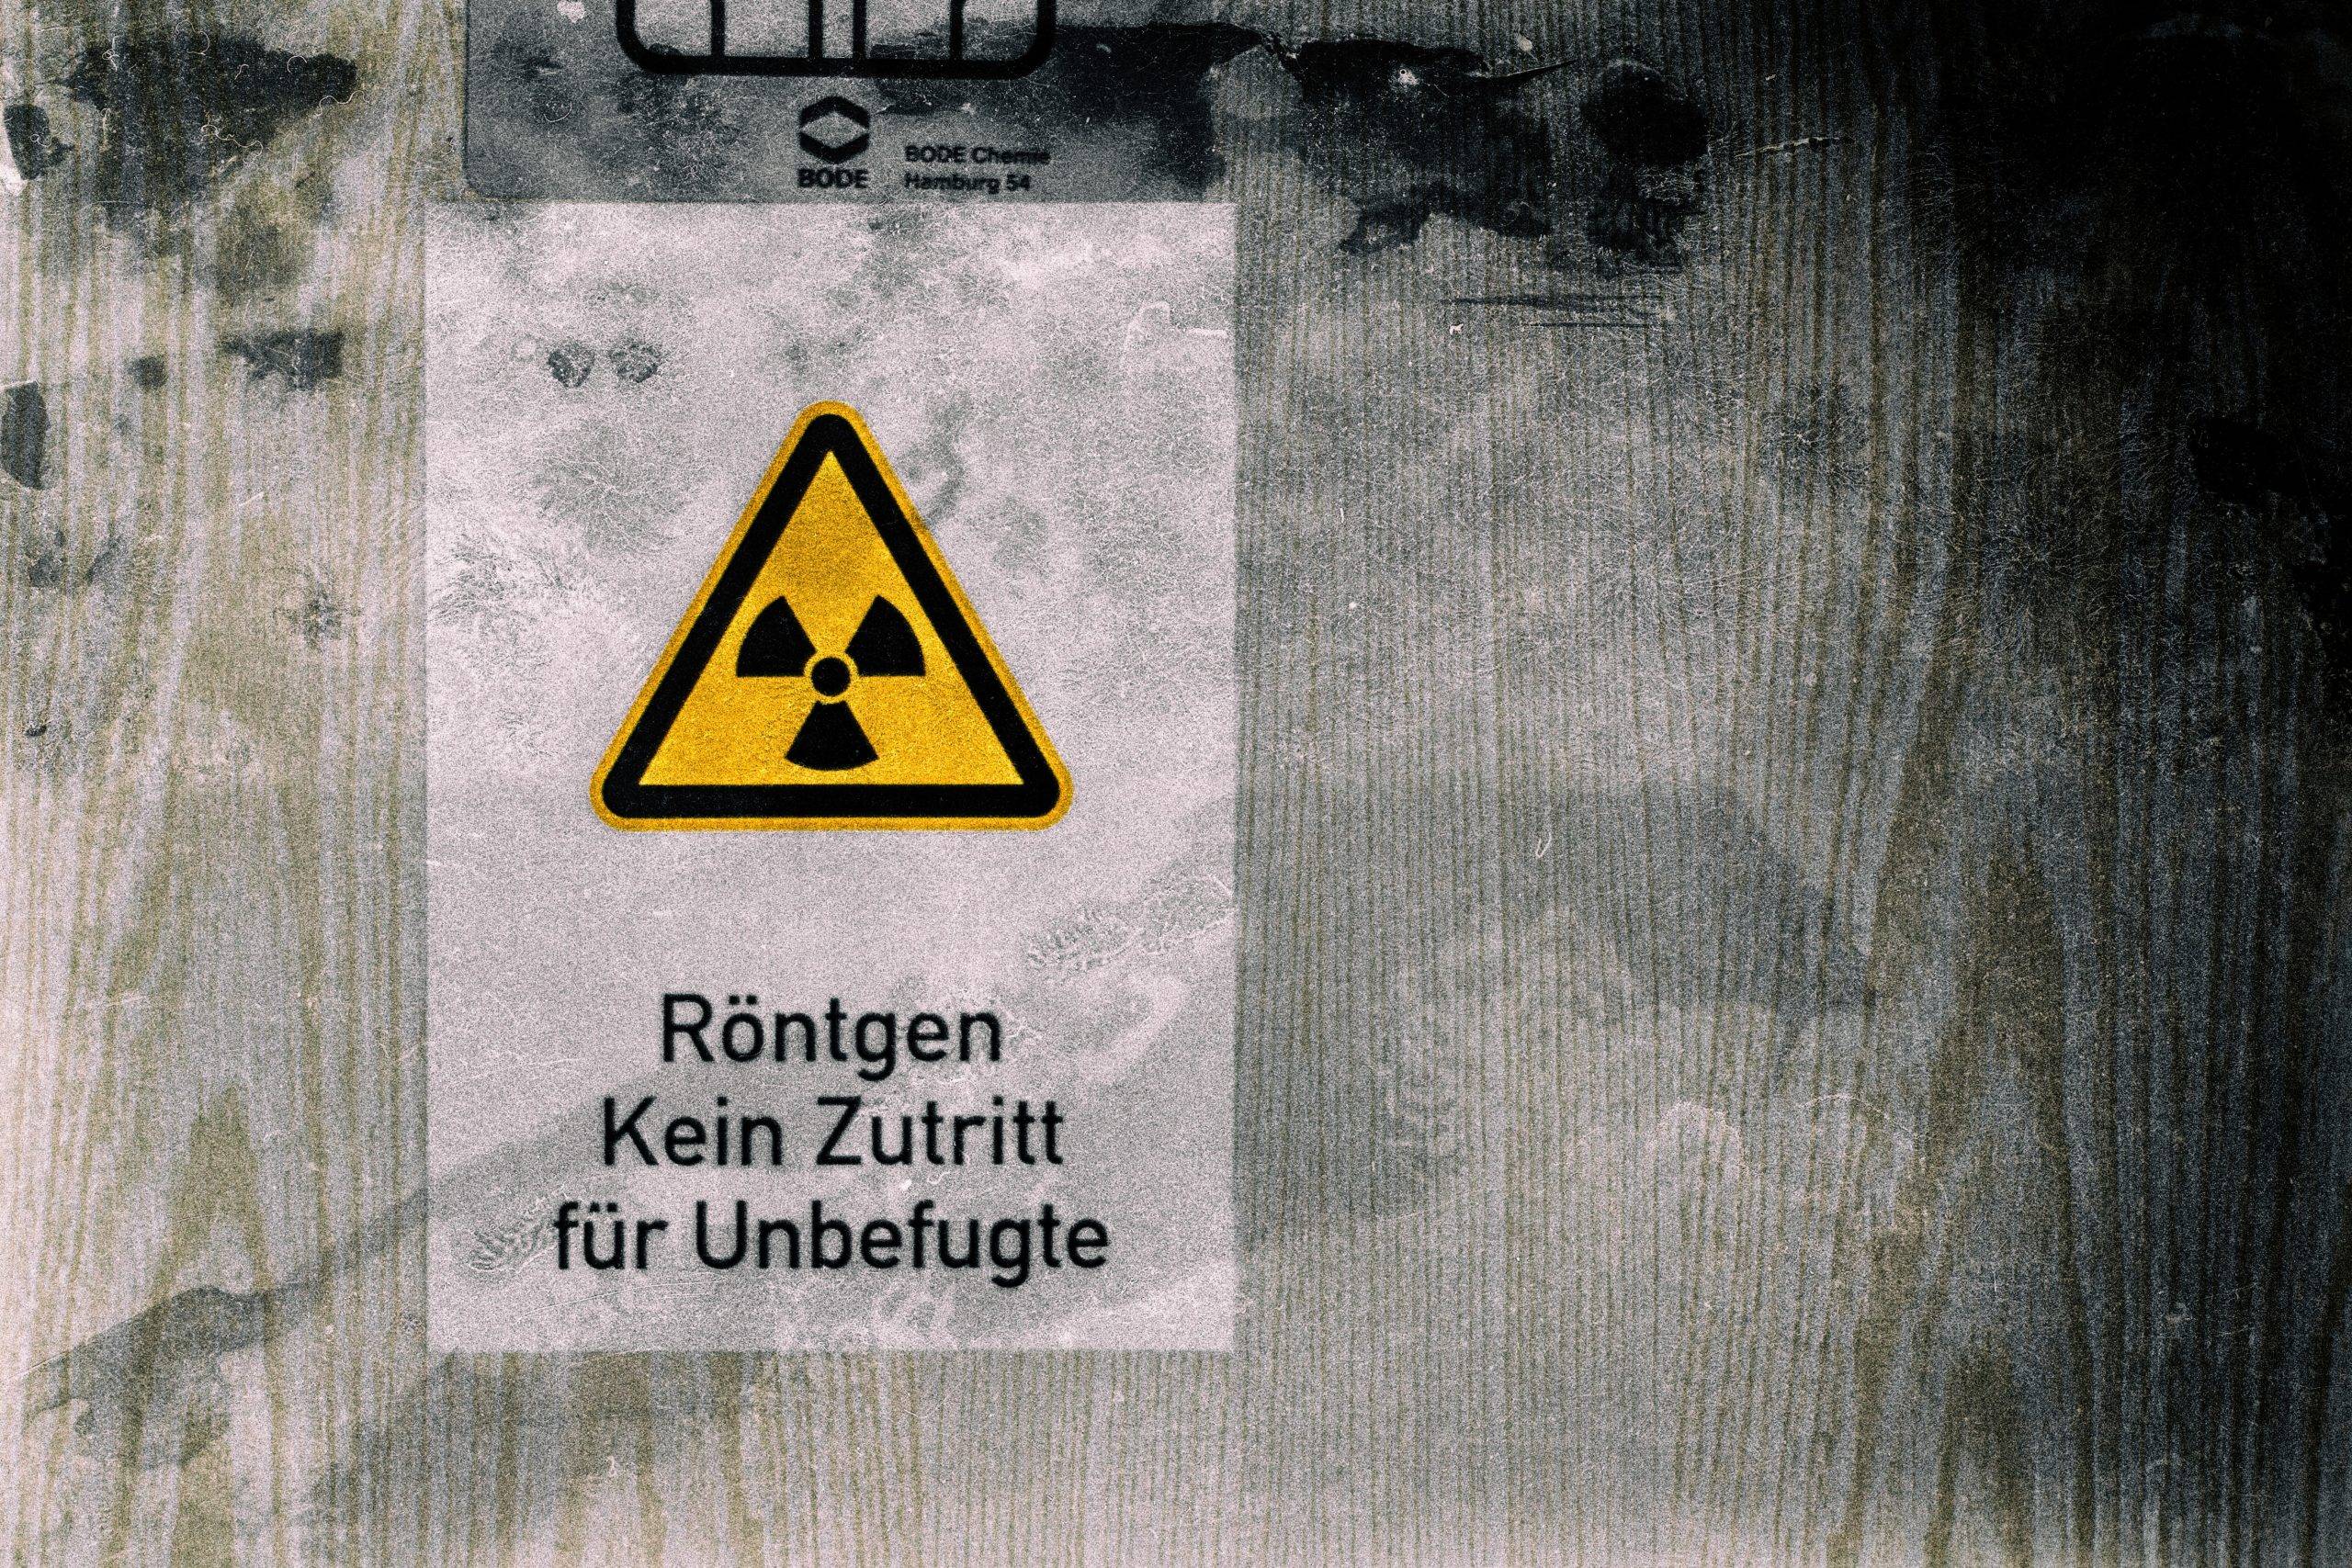 danger logo